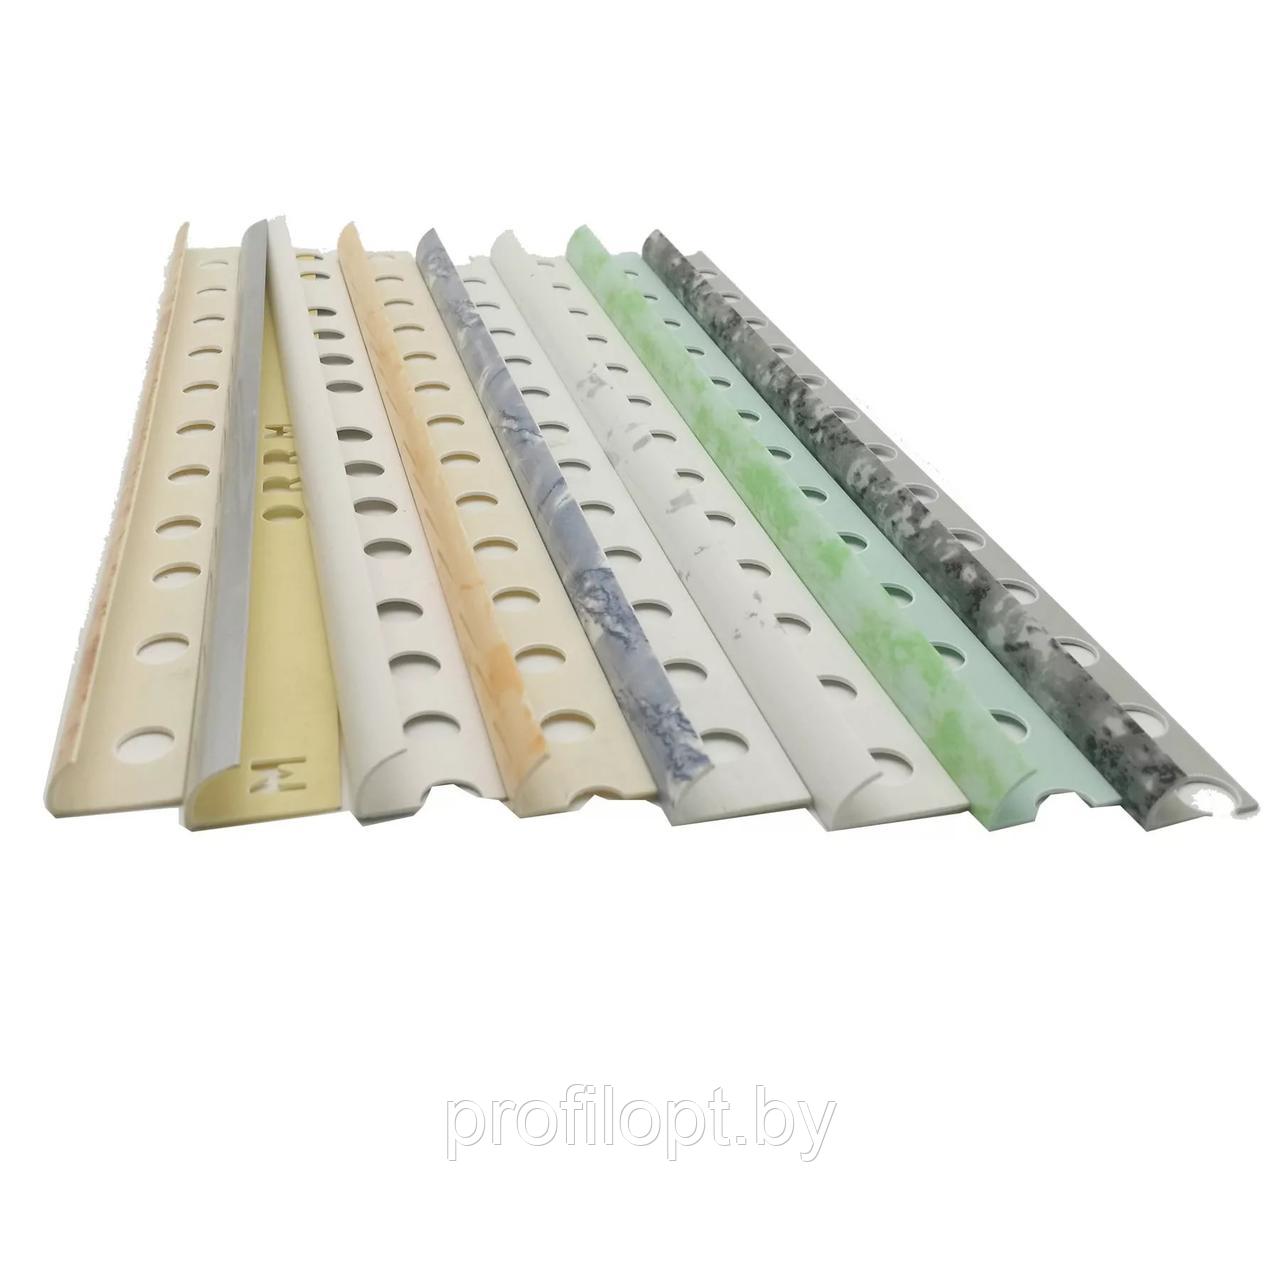 Уголок для плитки наружный ПВХ 10 мм, Белые и цветные, 250 см